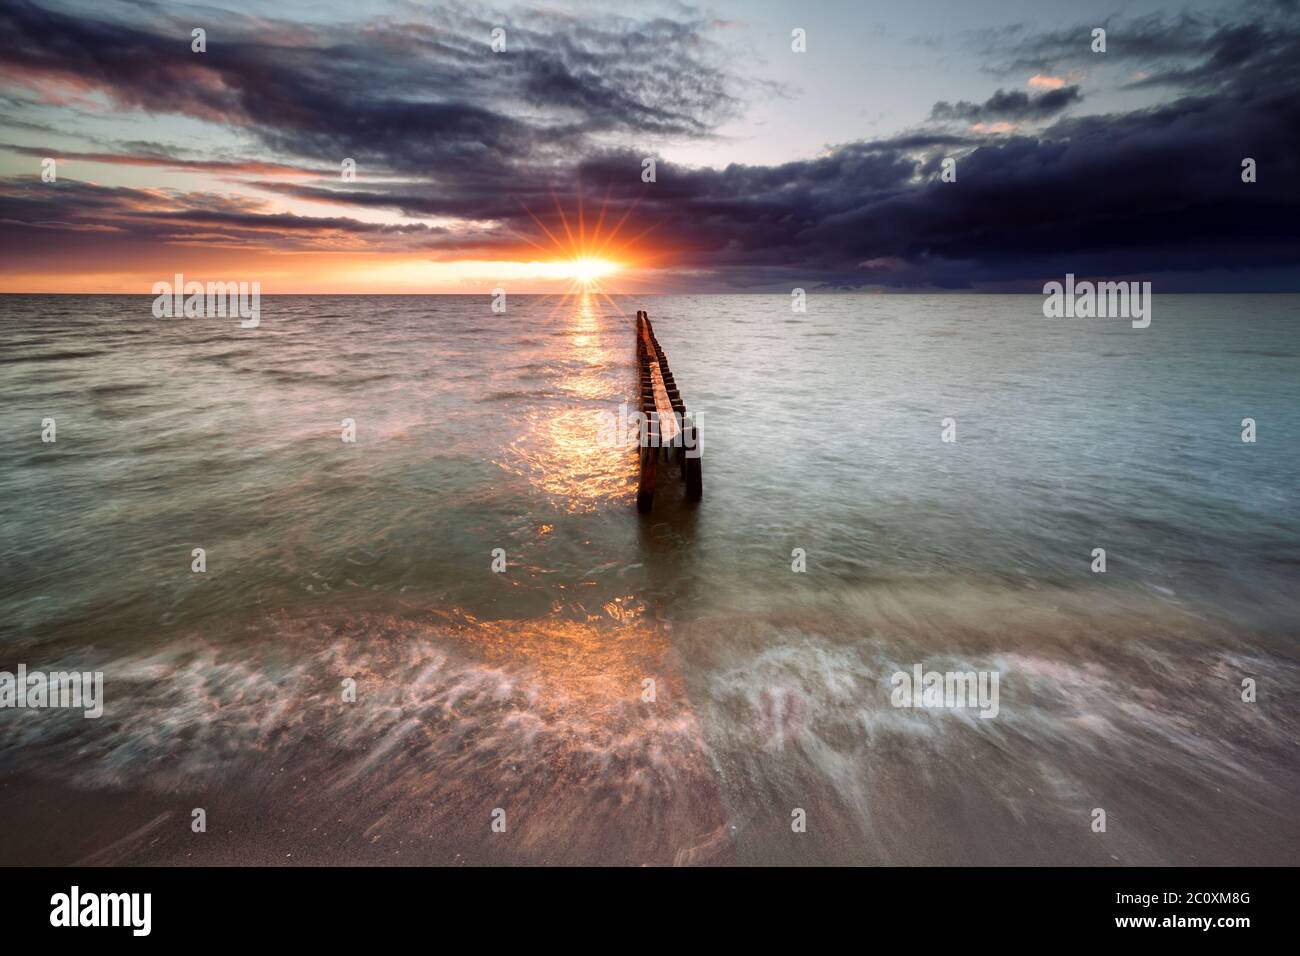 sundown on Ijsselmeer beach Stock Photo